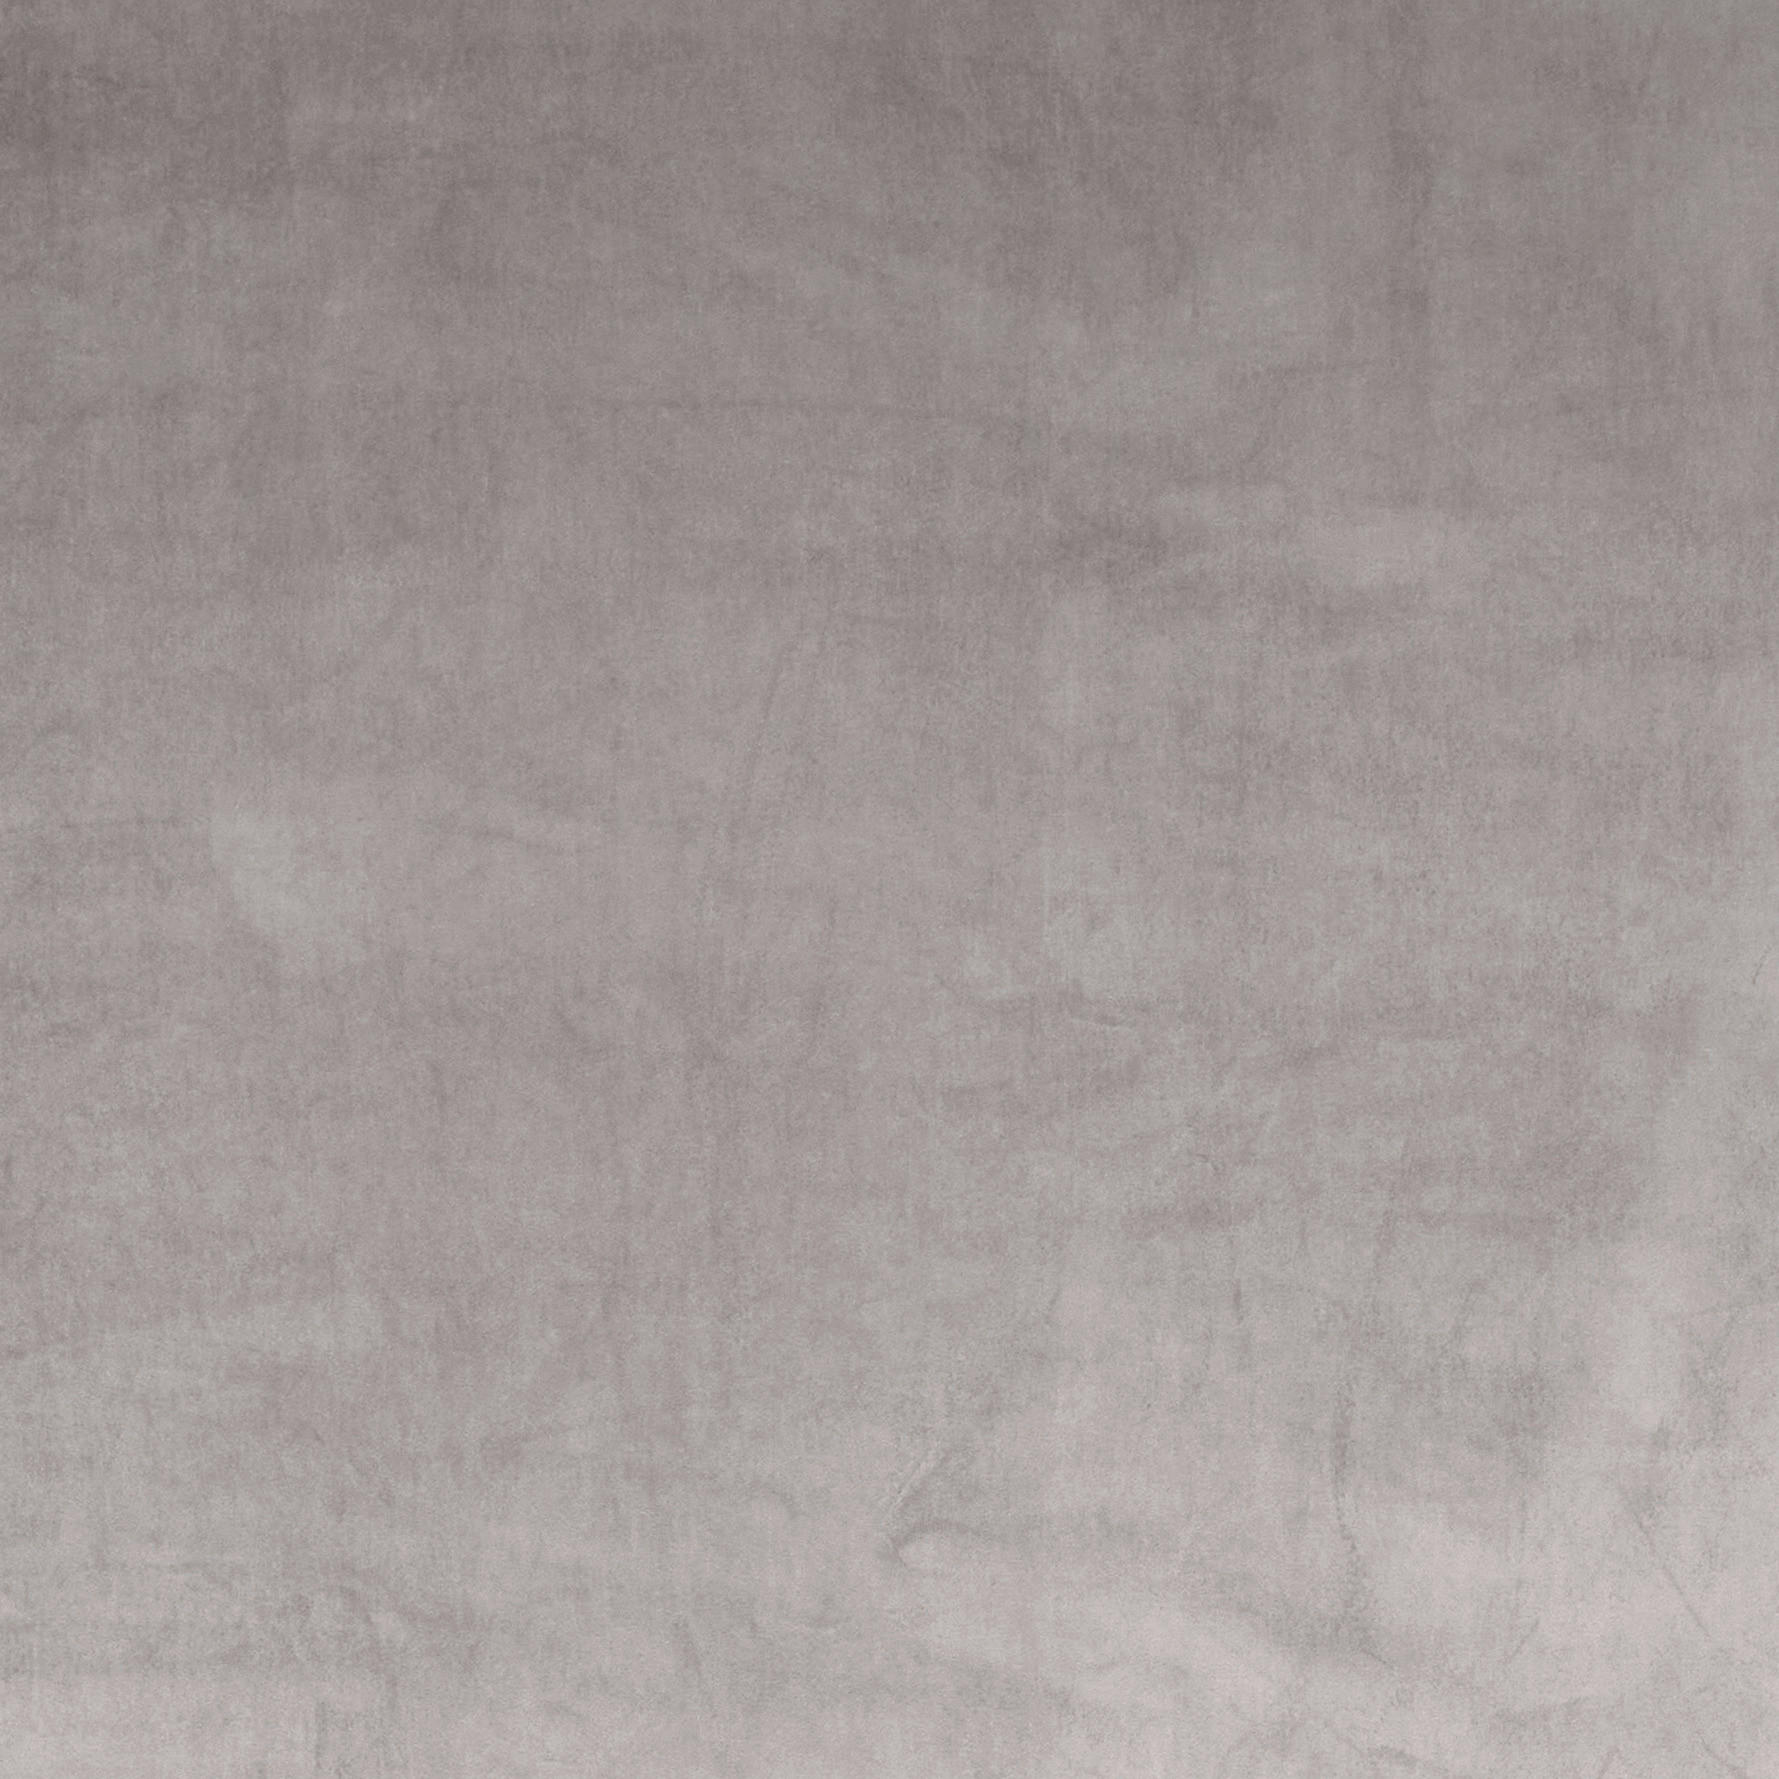 FERTIGVORHANG ZENATO blickdicht 135/245 cm   - Hellgrau, KONVENTIONELL, Textil (135/245cm) - Ambiente